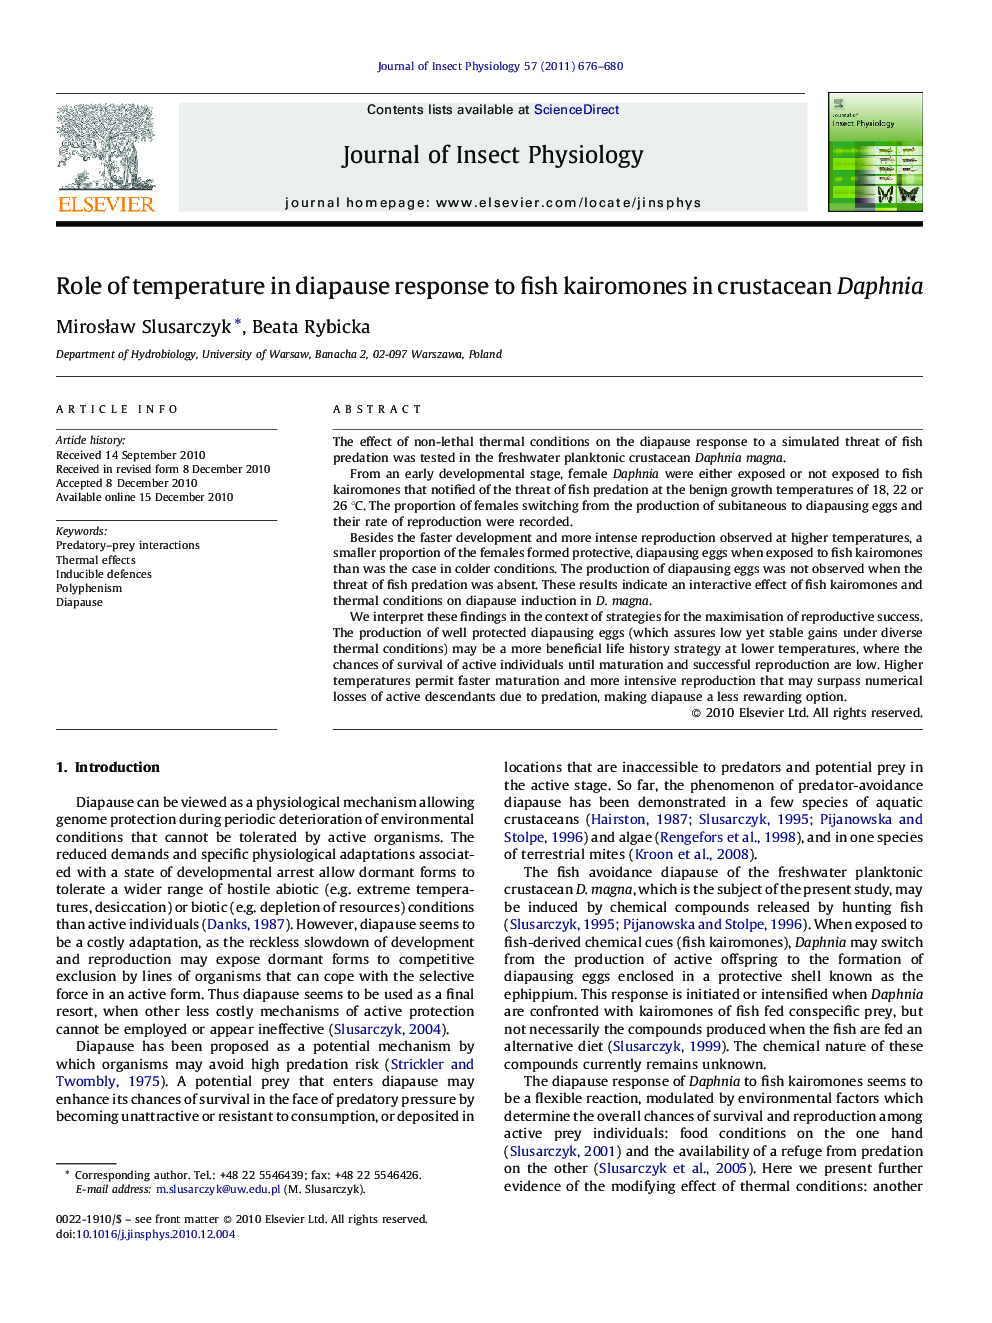 Role of temperature in diapause response to fish kairomones in crustacean Daphnia